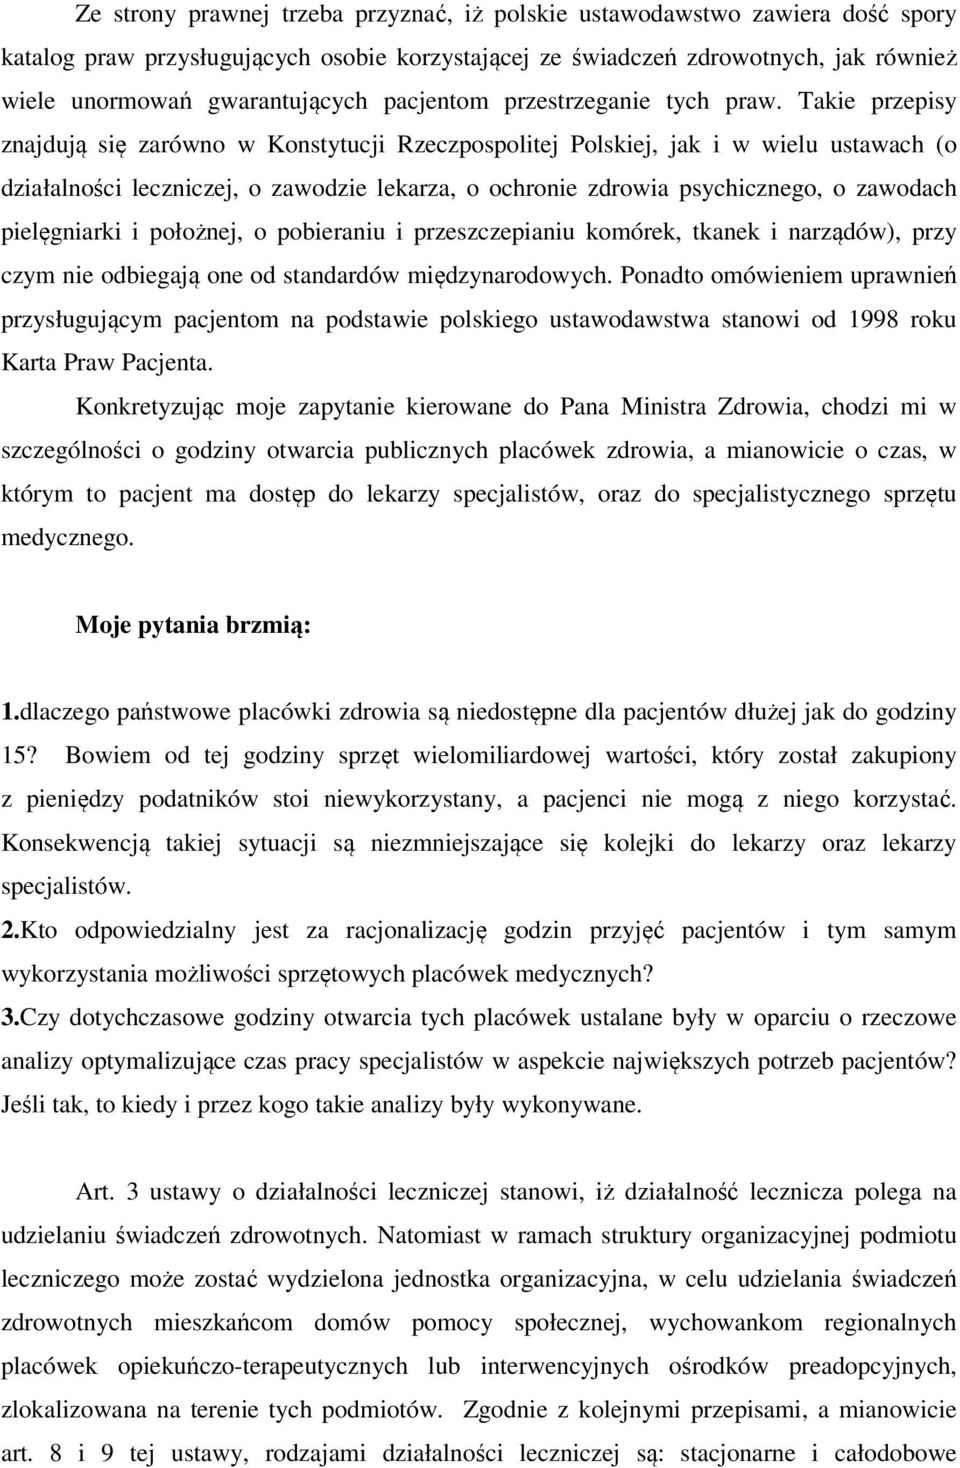 Takie przepisy znajdują się zarówno w Konstytucji Rzeczpospolitej Polskiej, jak i w wielu ustawach (o działalności leczniczej, o zawodzie lekarza, o ochronie zdrowia psychicznego, o zawodach